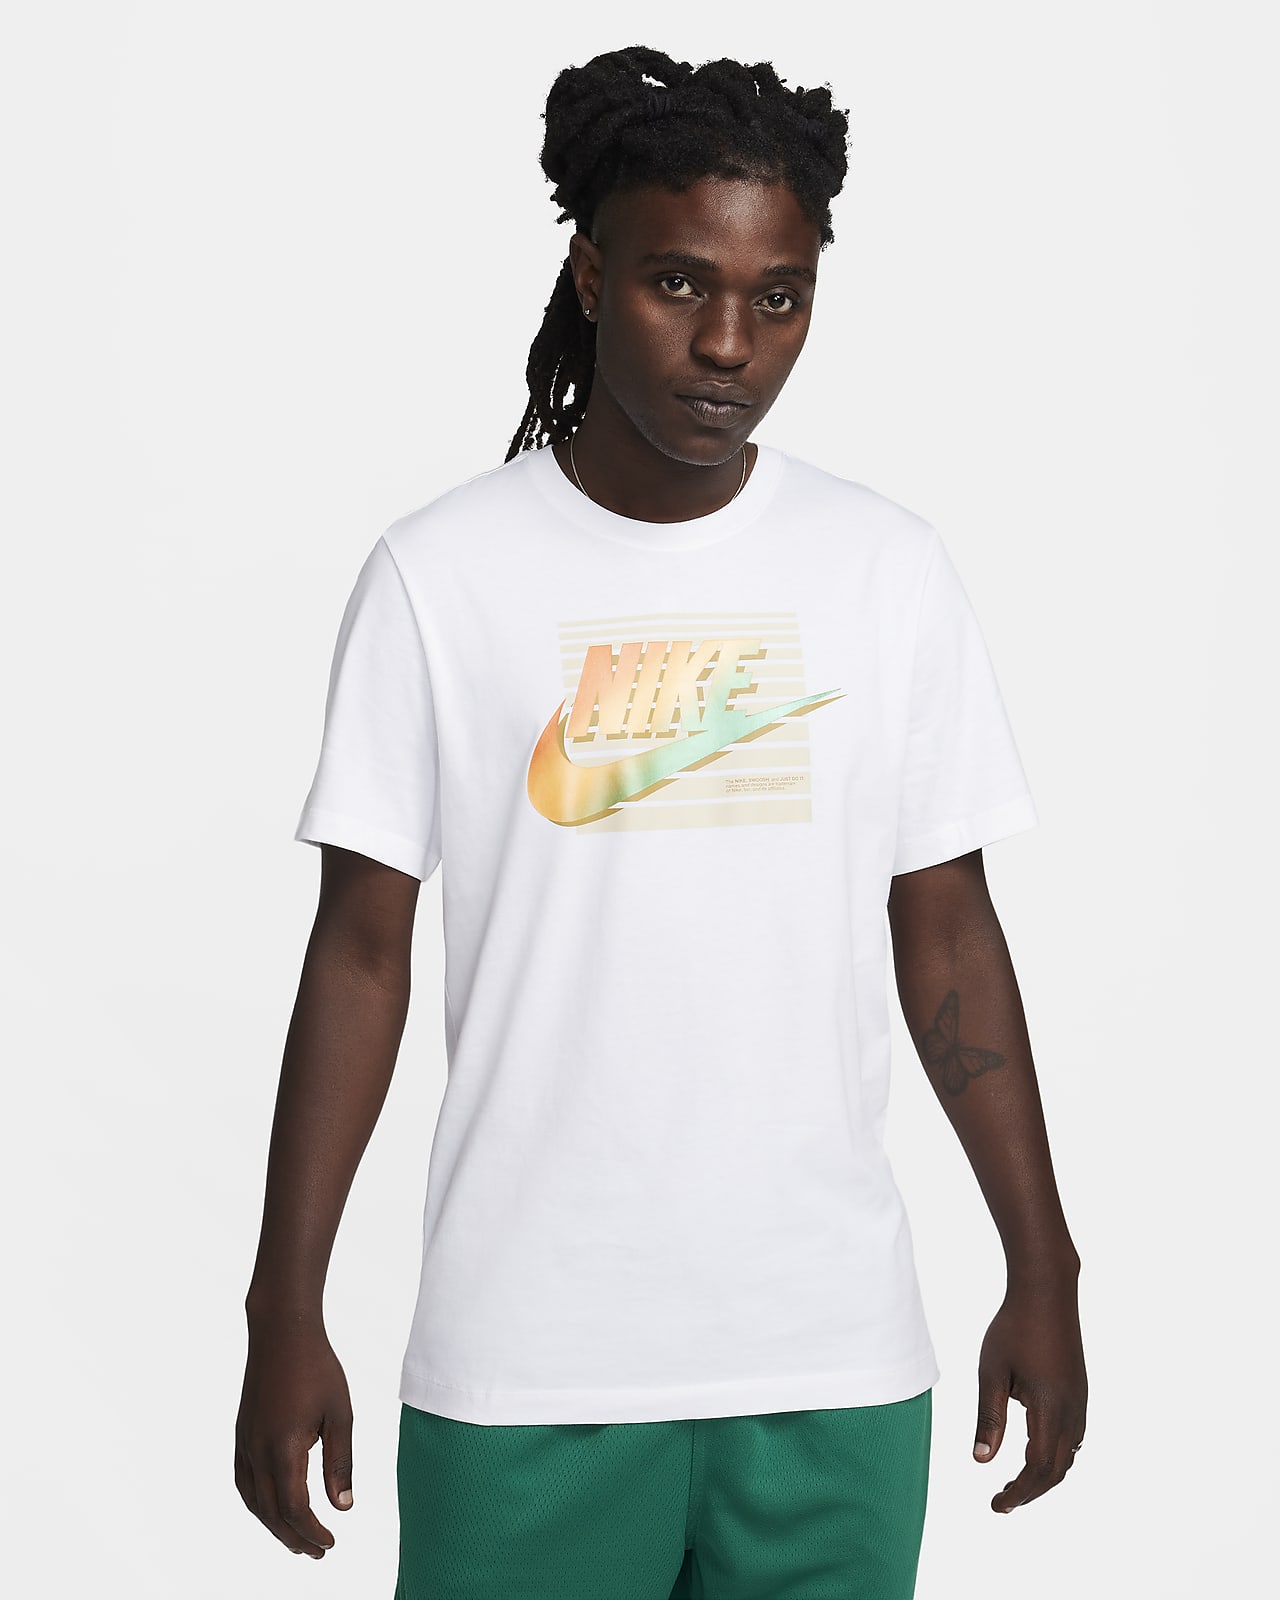 Nike Sportswear Men's T-Shirt